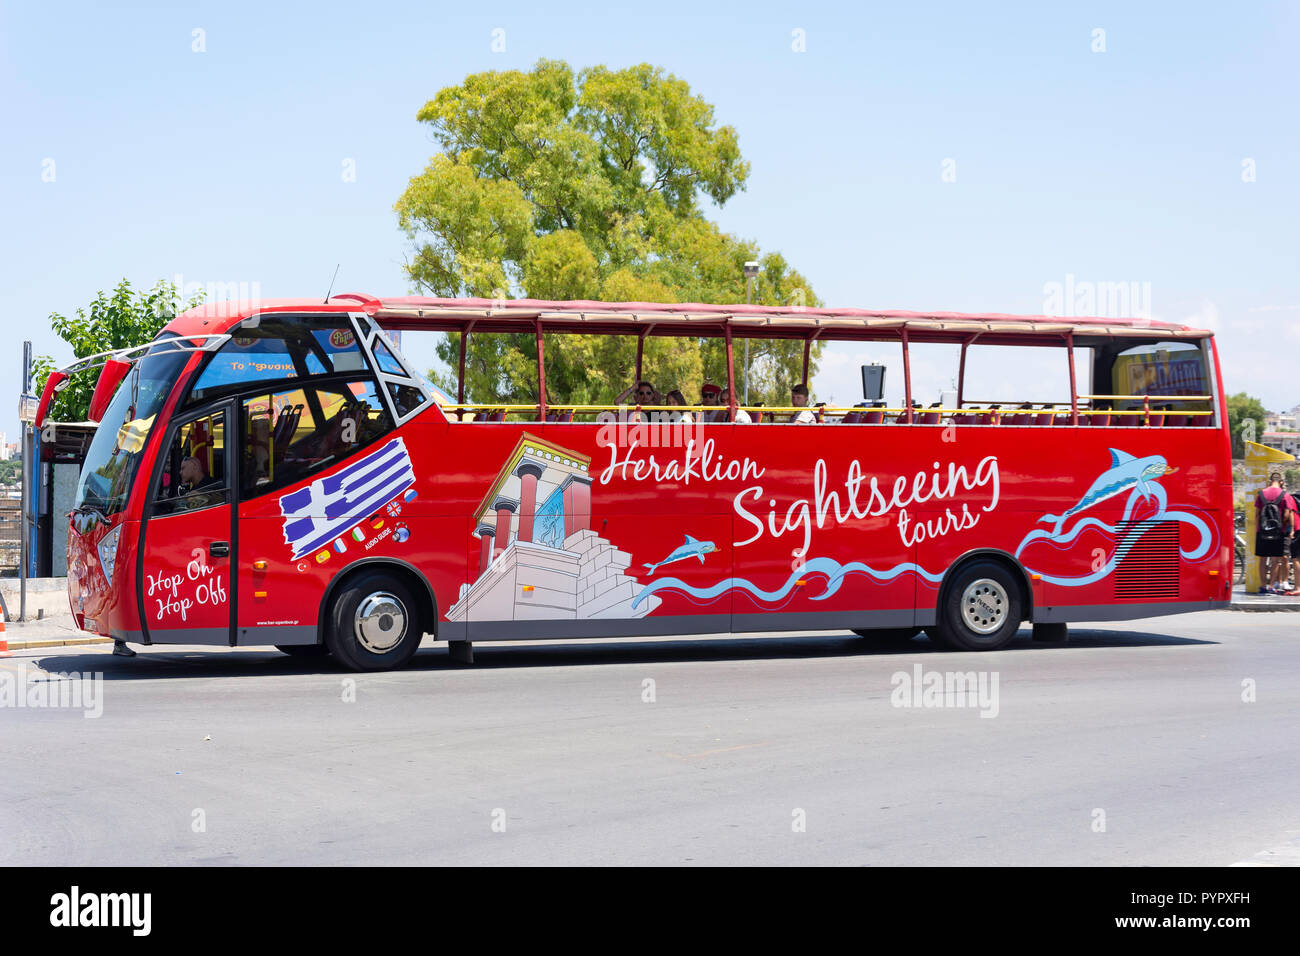 Sightseeing Tour mit dem Bus von Heraklion, Heraklion (irakleio), Irakleio Region, Kreta (Kriti), Griechenland Stockfoto